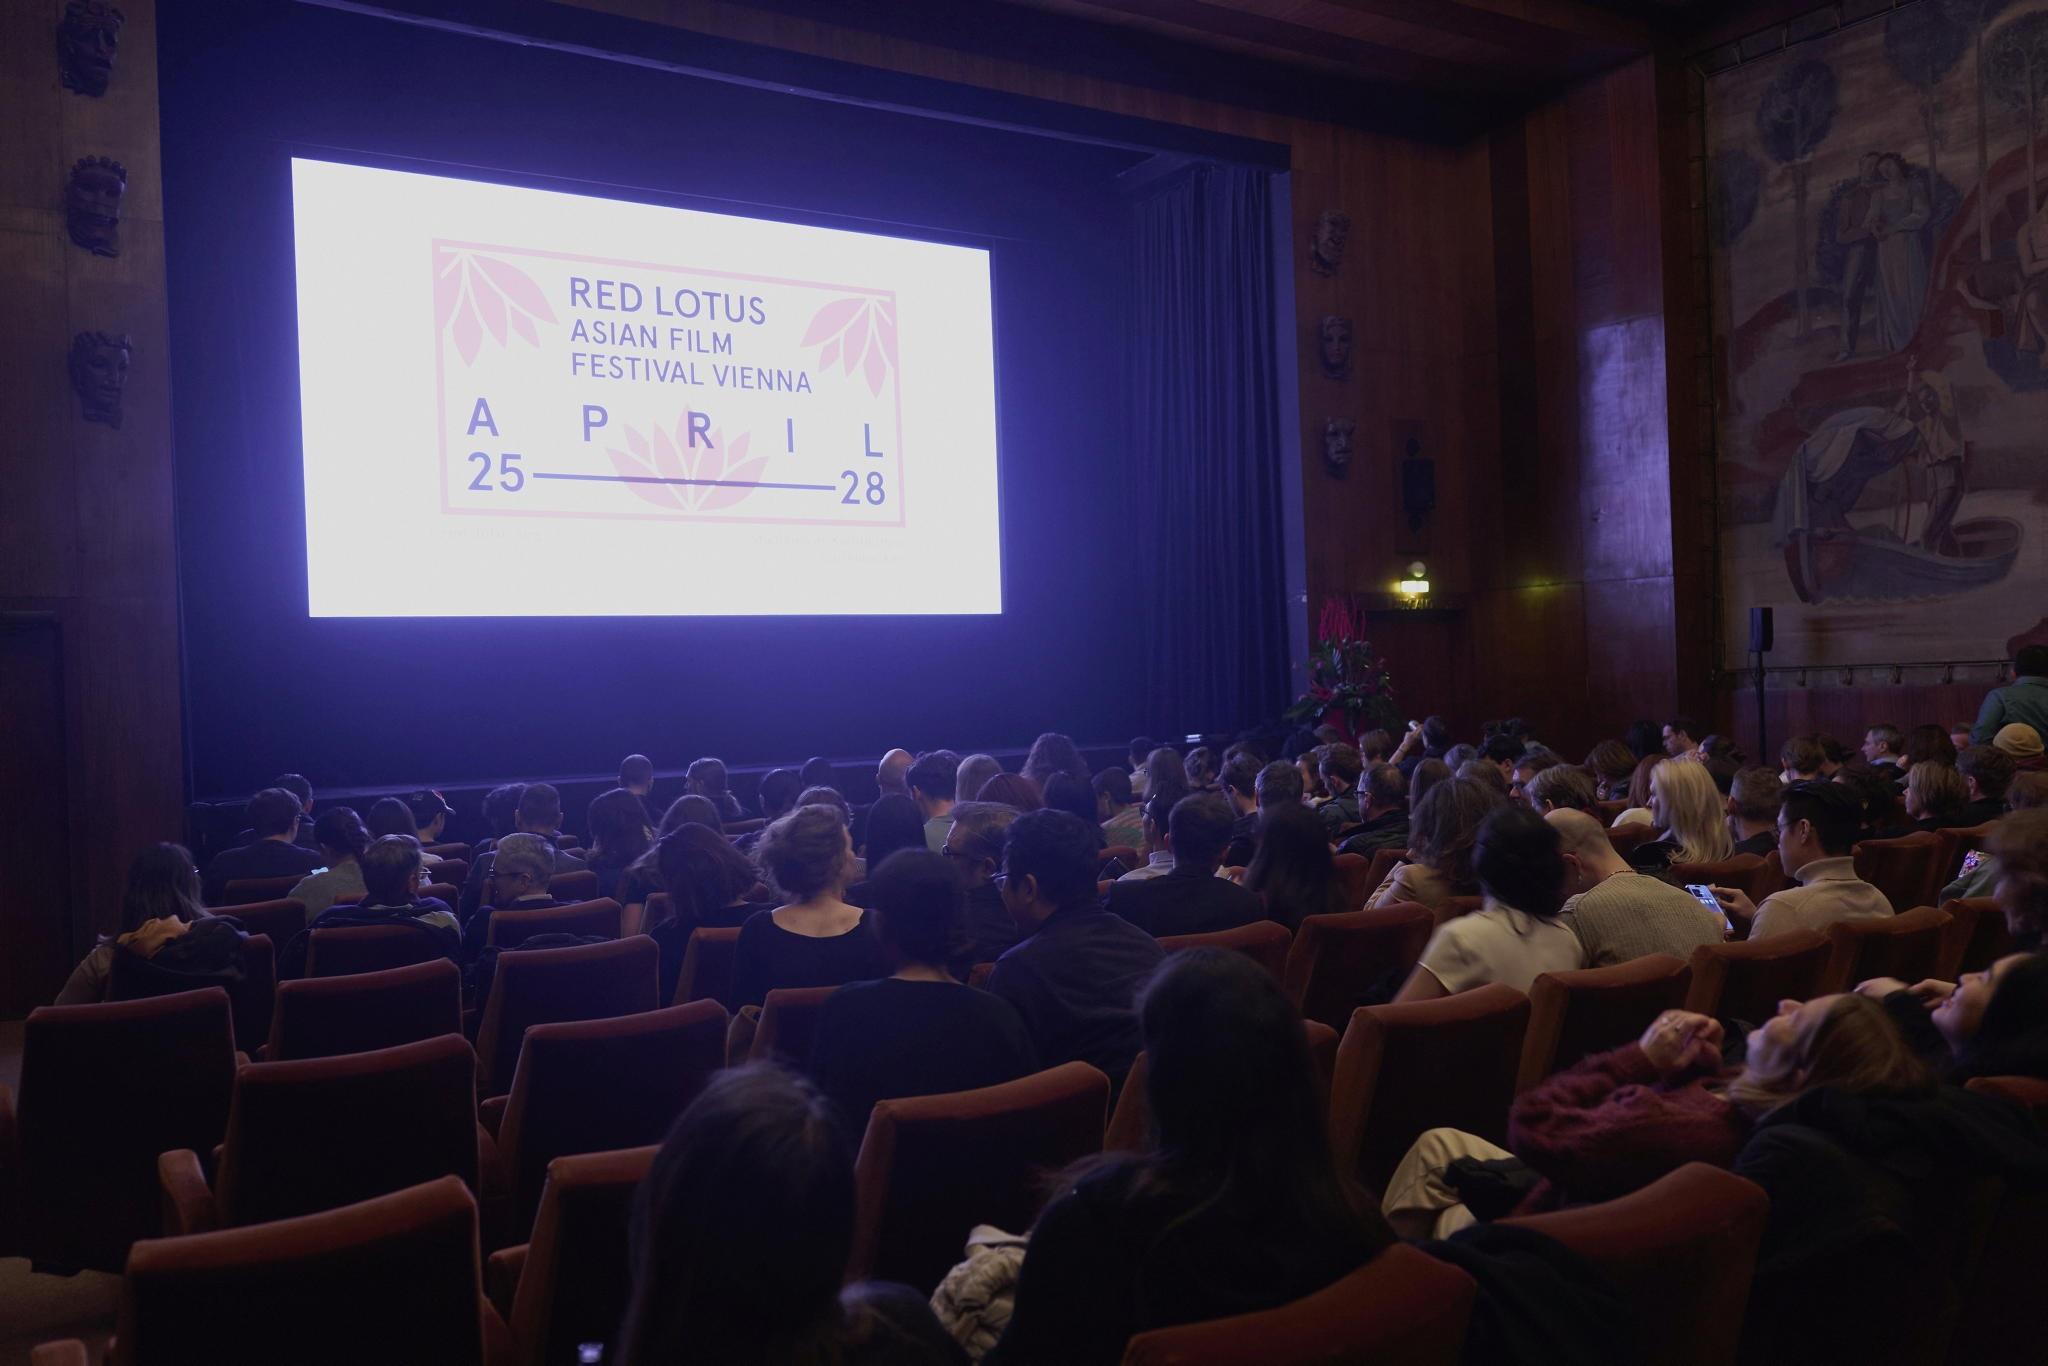 香港駐柏林經濟貿易辦事處支持第三屆Red Lotus亞洲電影節放映兩部香港電影。該電影節由四月二十五日至二十八日（維也納時間）在維也納舉行。圖示四月二十六日出席「香港環節」開幕放映會的觀眾。